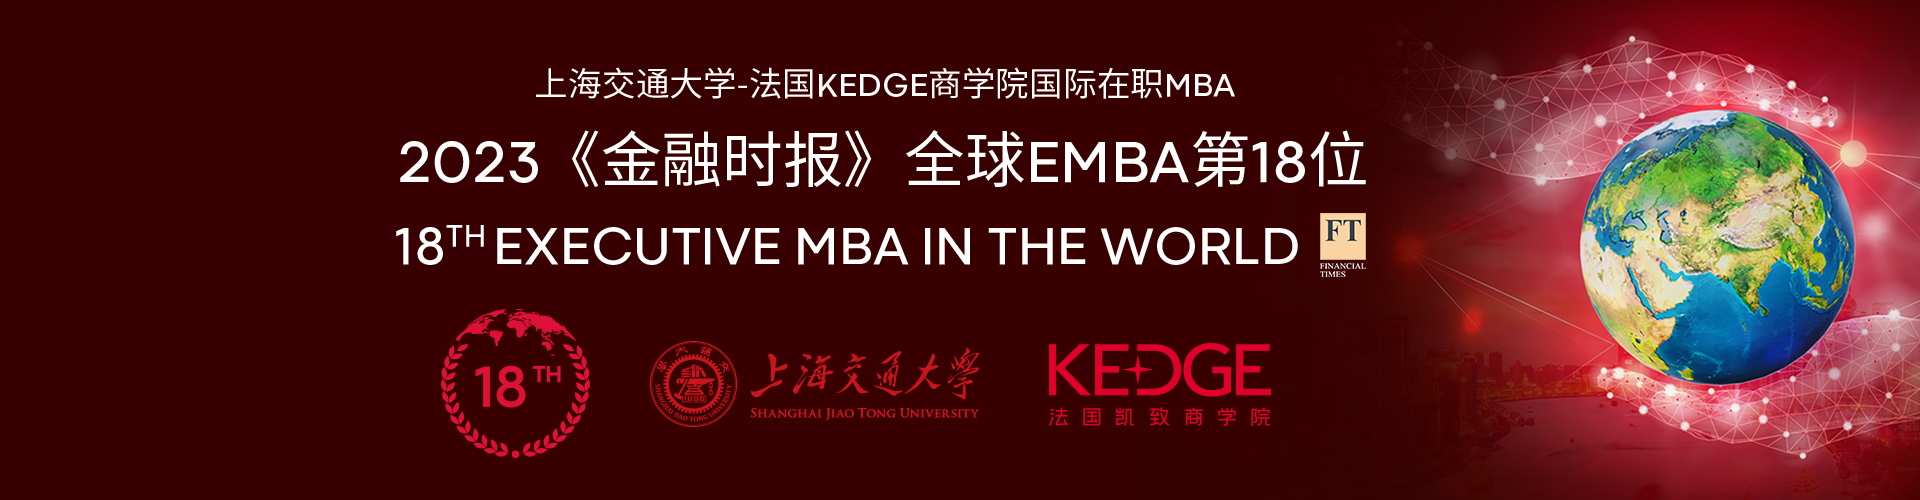 上海交通大学-法国凯致商学院国际在职MBA